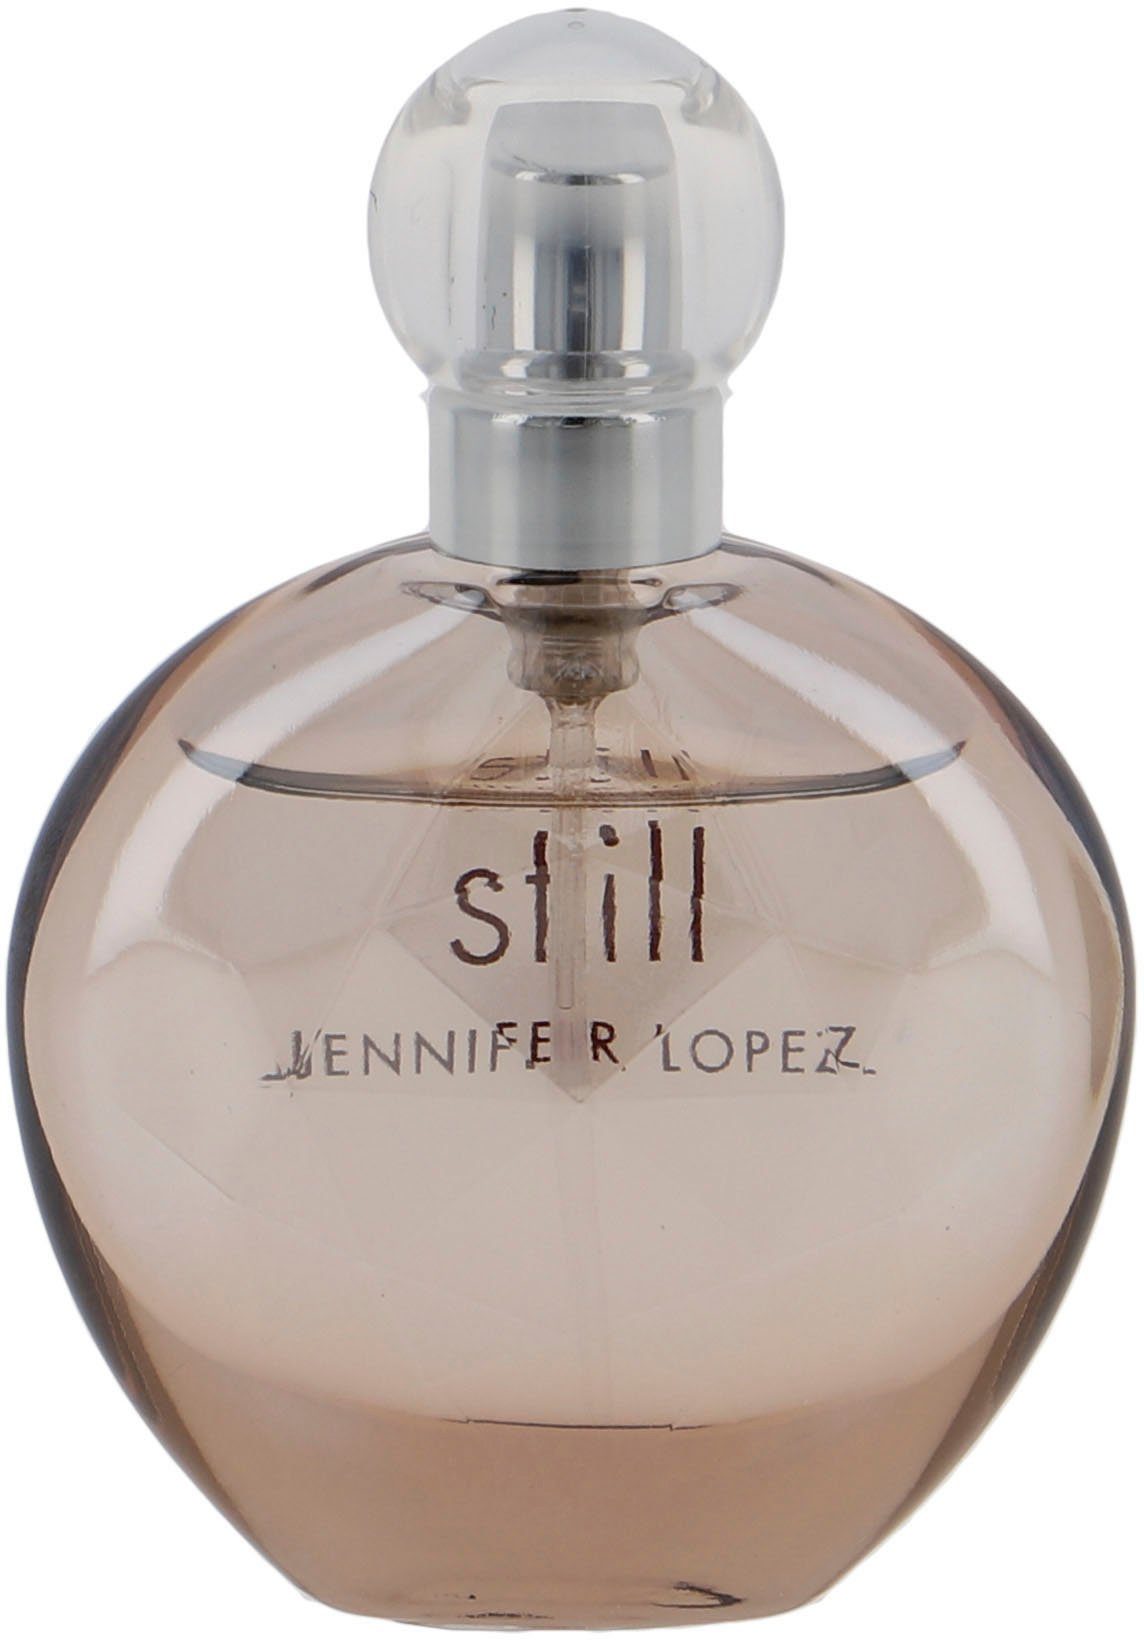 JENNIFER LOPEZ Eau de Parfum J.Lo Still